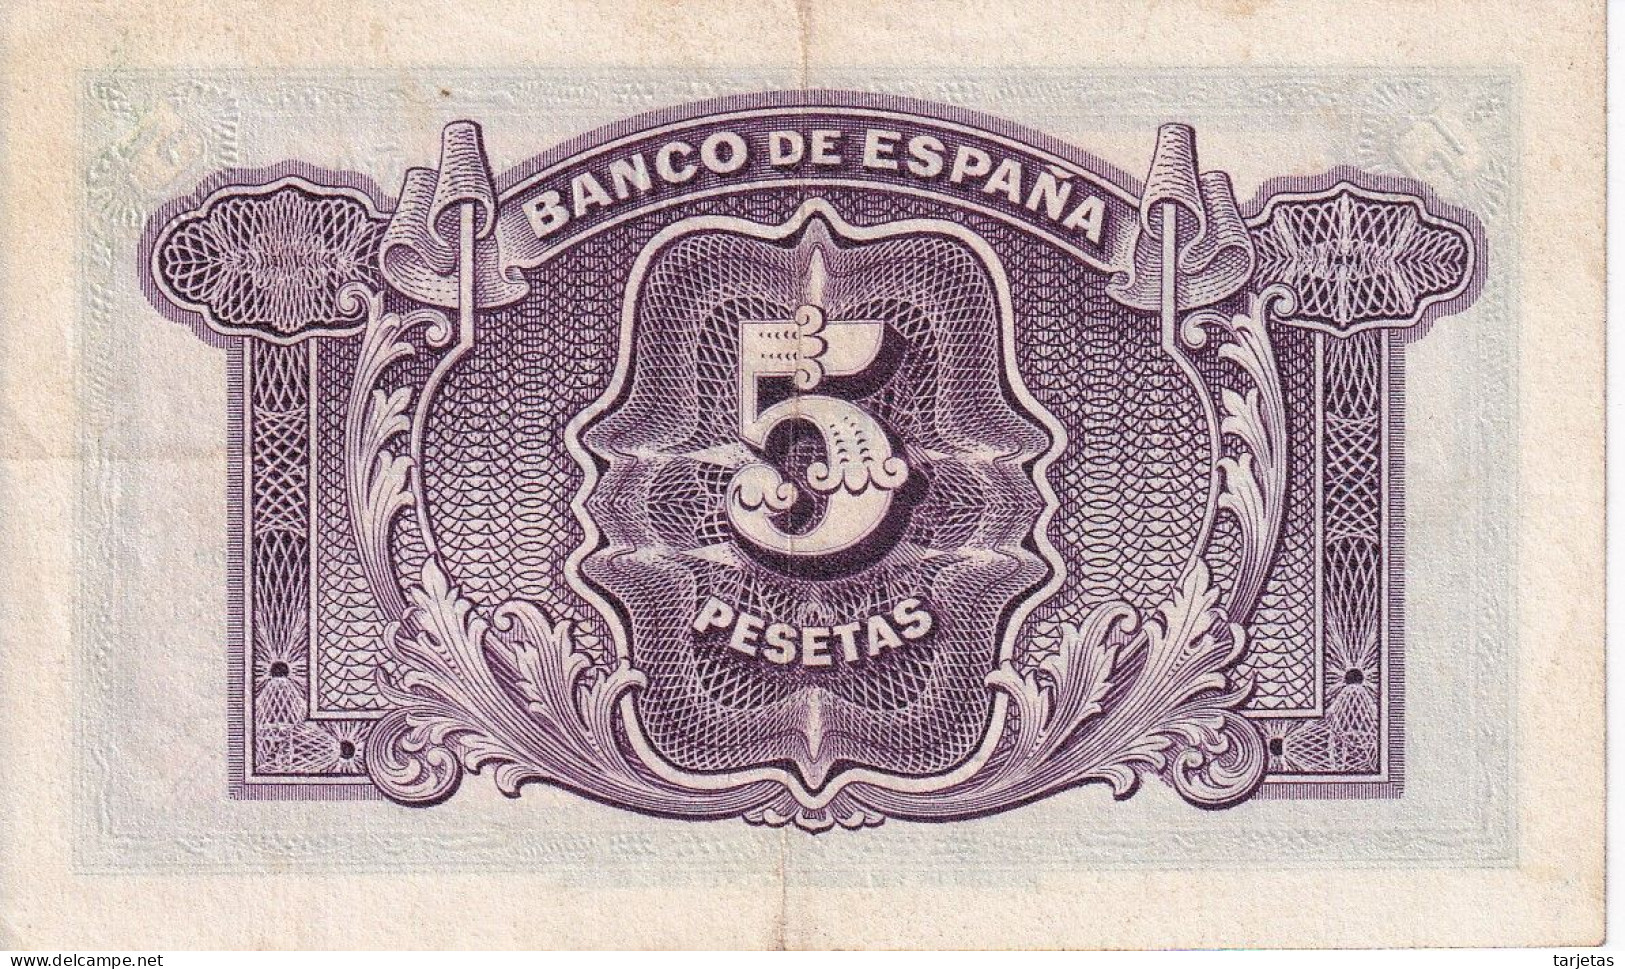 BILLETE DE ESPAÑA DE 5 PTAS DEL AÑO 1935 SERIE A EN CALIDAD EBC (XF) (BANKNOTE) - 5 Pesetas